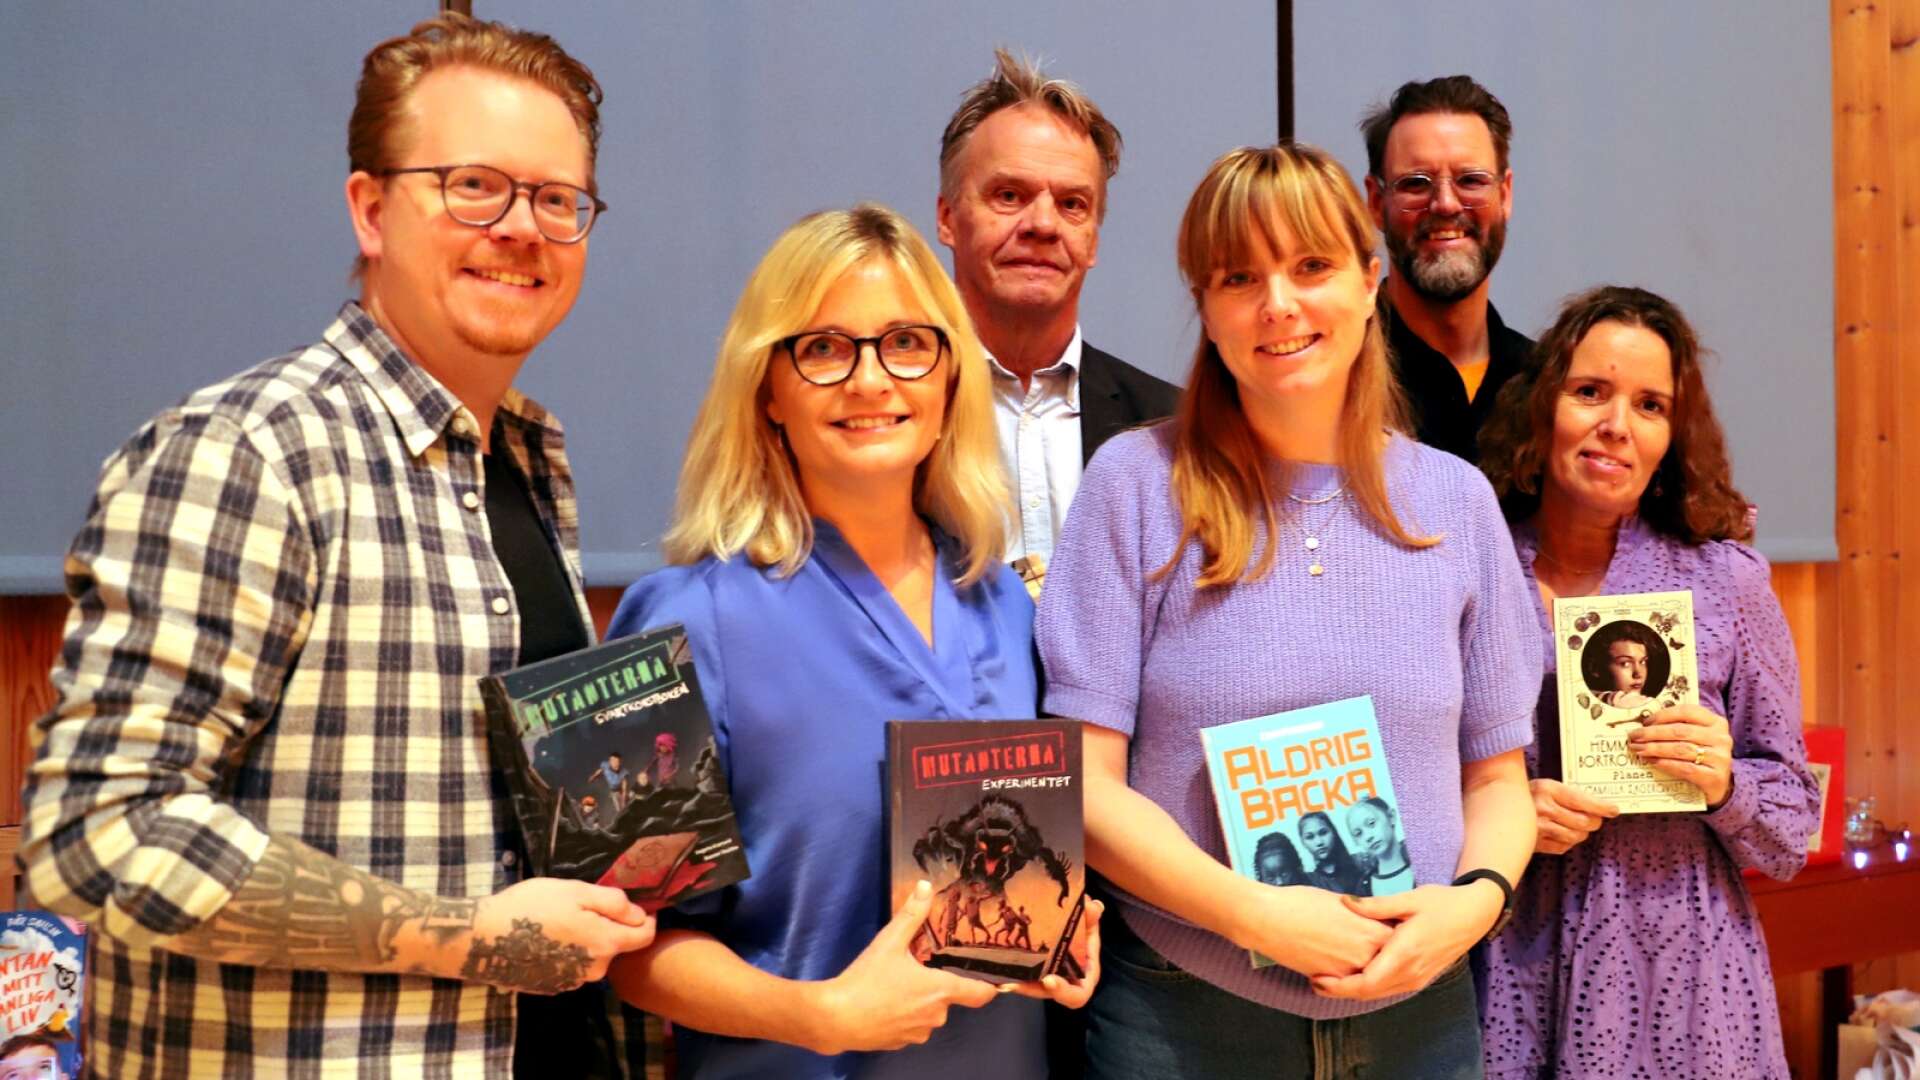 I november samlades författarna bakom de nominerade böckerna för att träffa elever i Karlstad: Daniel Thollin, Ingela Korsell, Set Mattsson, Cina Friedner, Pär Sahlin och Camilla Lagerqvist.